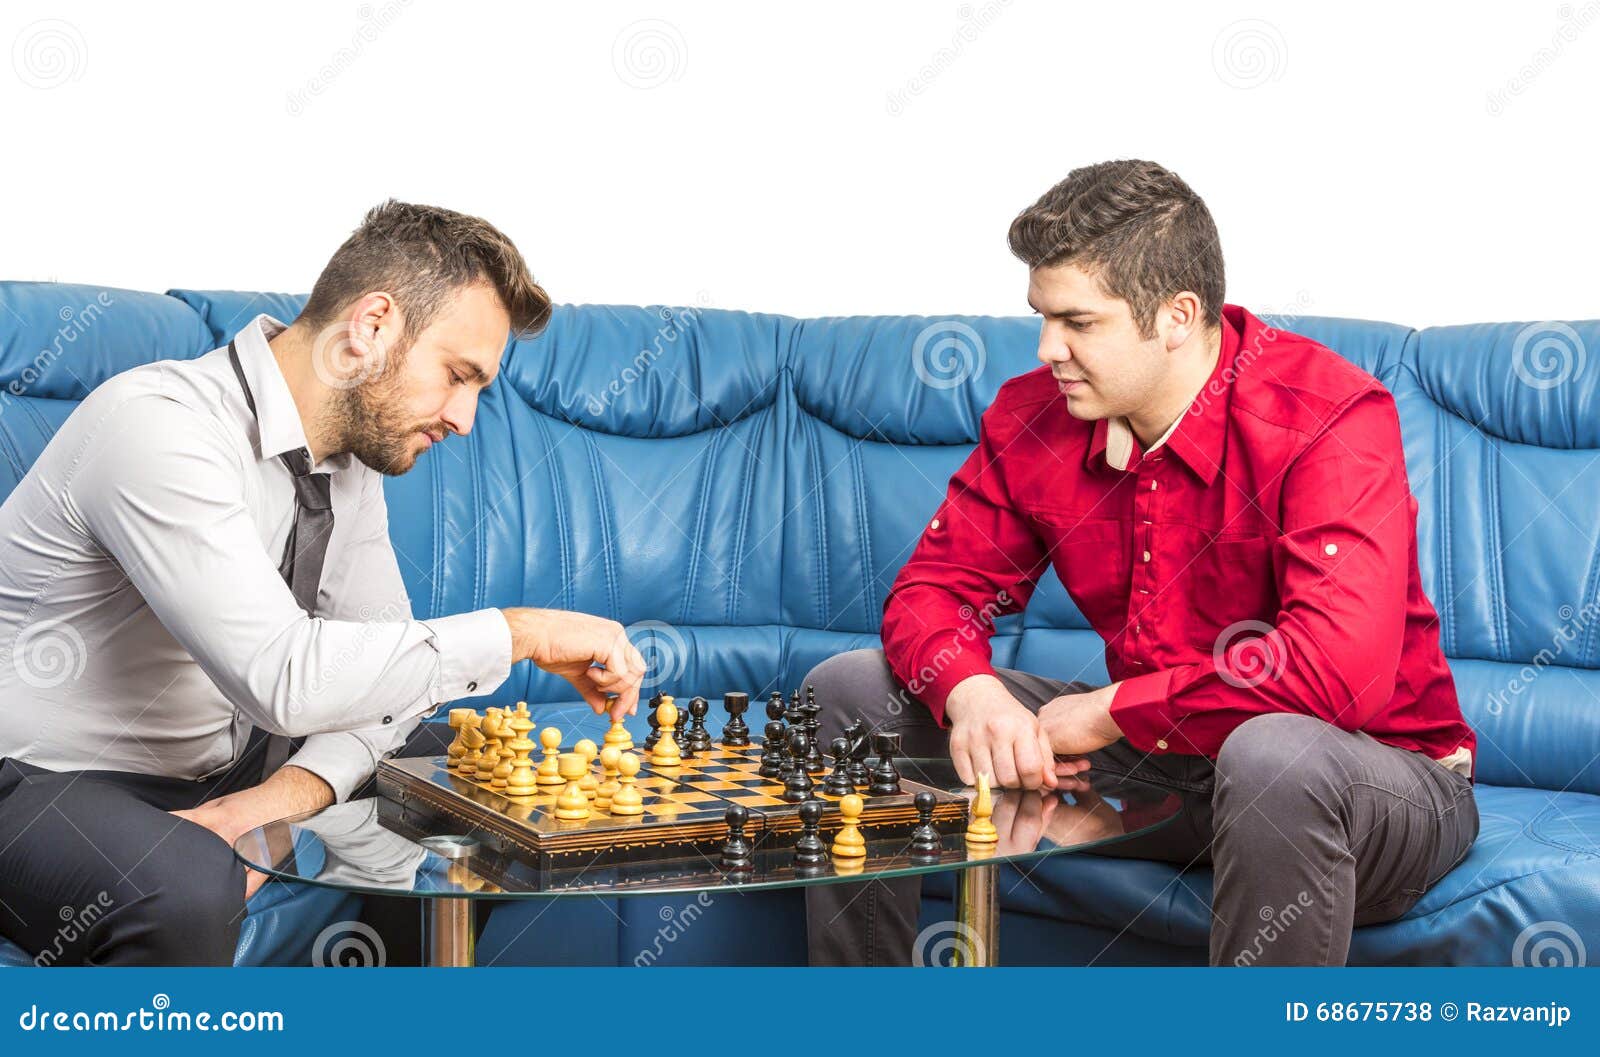 schach spielen mit freunden